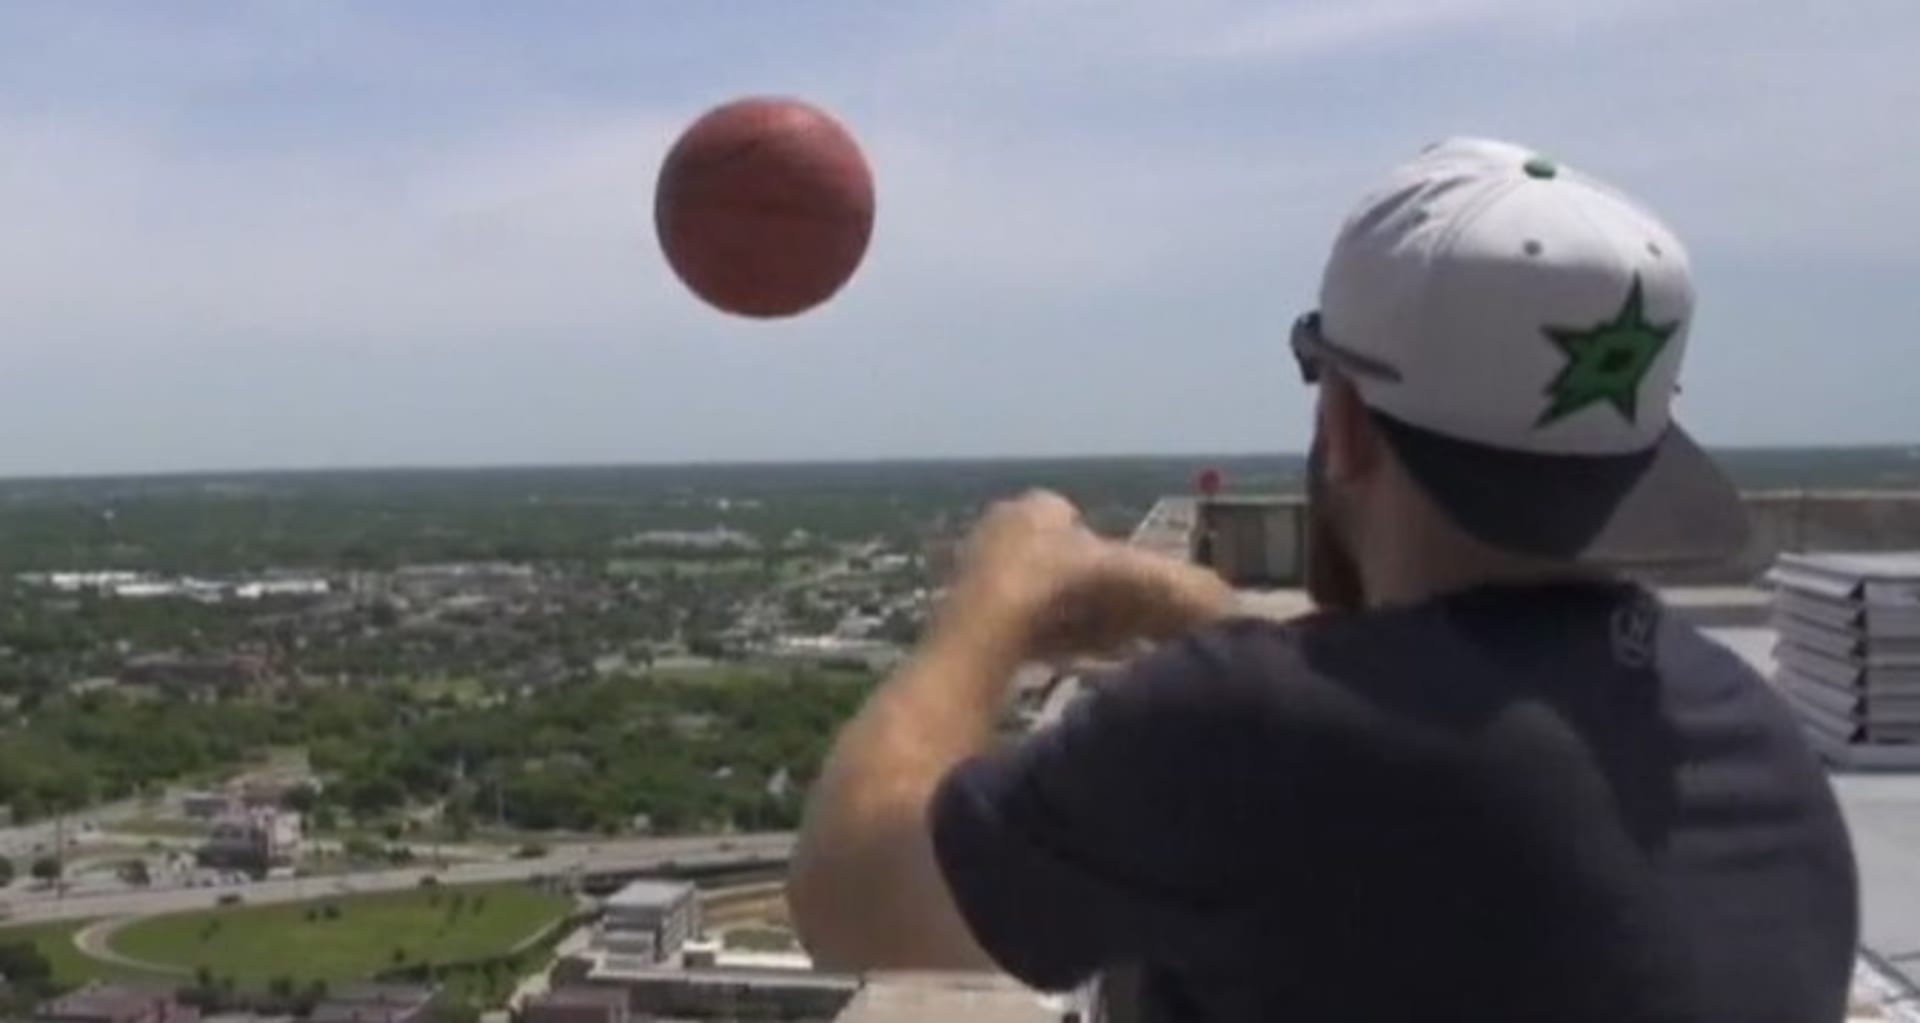 Parta chlapíků milujících basketbal trefí míčem do koše ze 162 metrů vysokého mrakodrapu. 